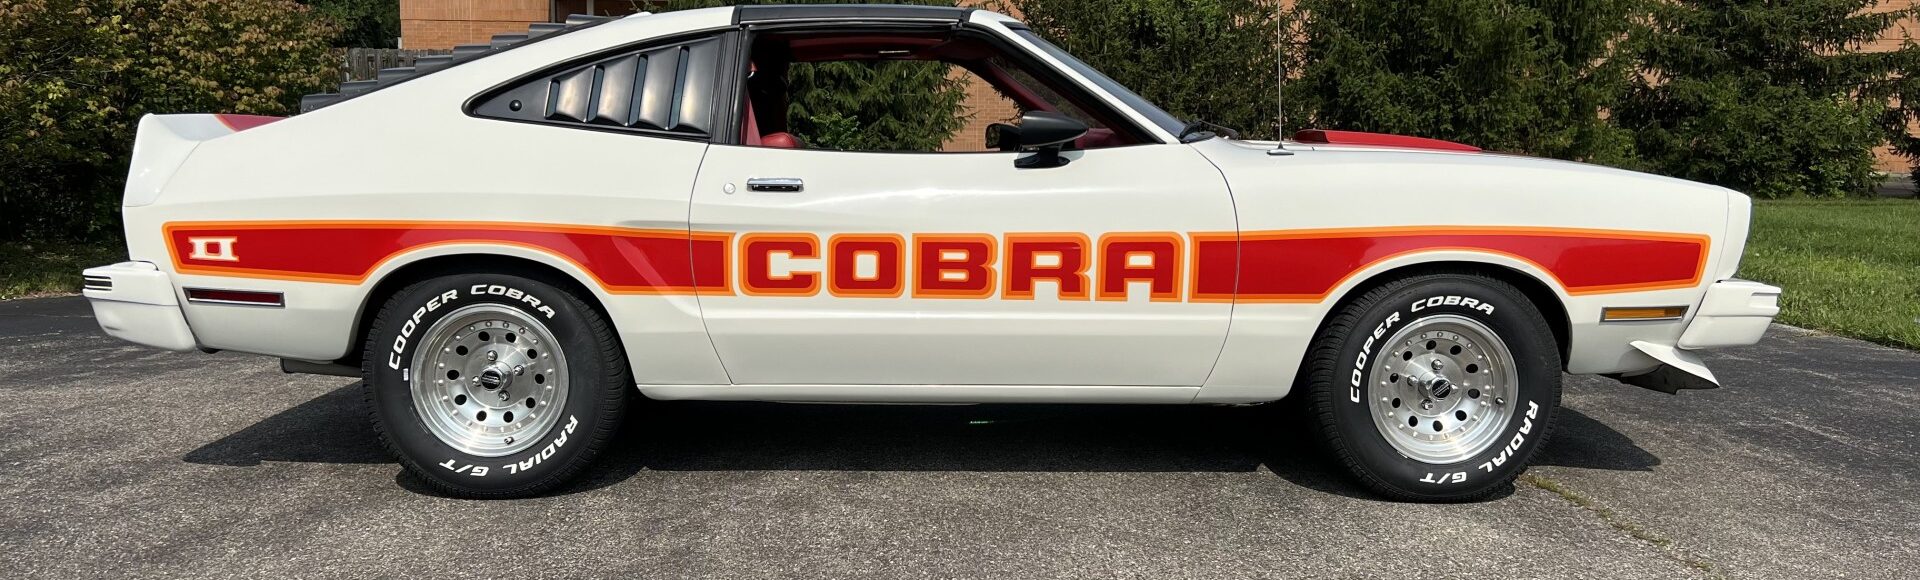 1978 Mustang Cobra II, T Tops, Auto, 83K Miles, Sold!